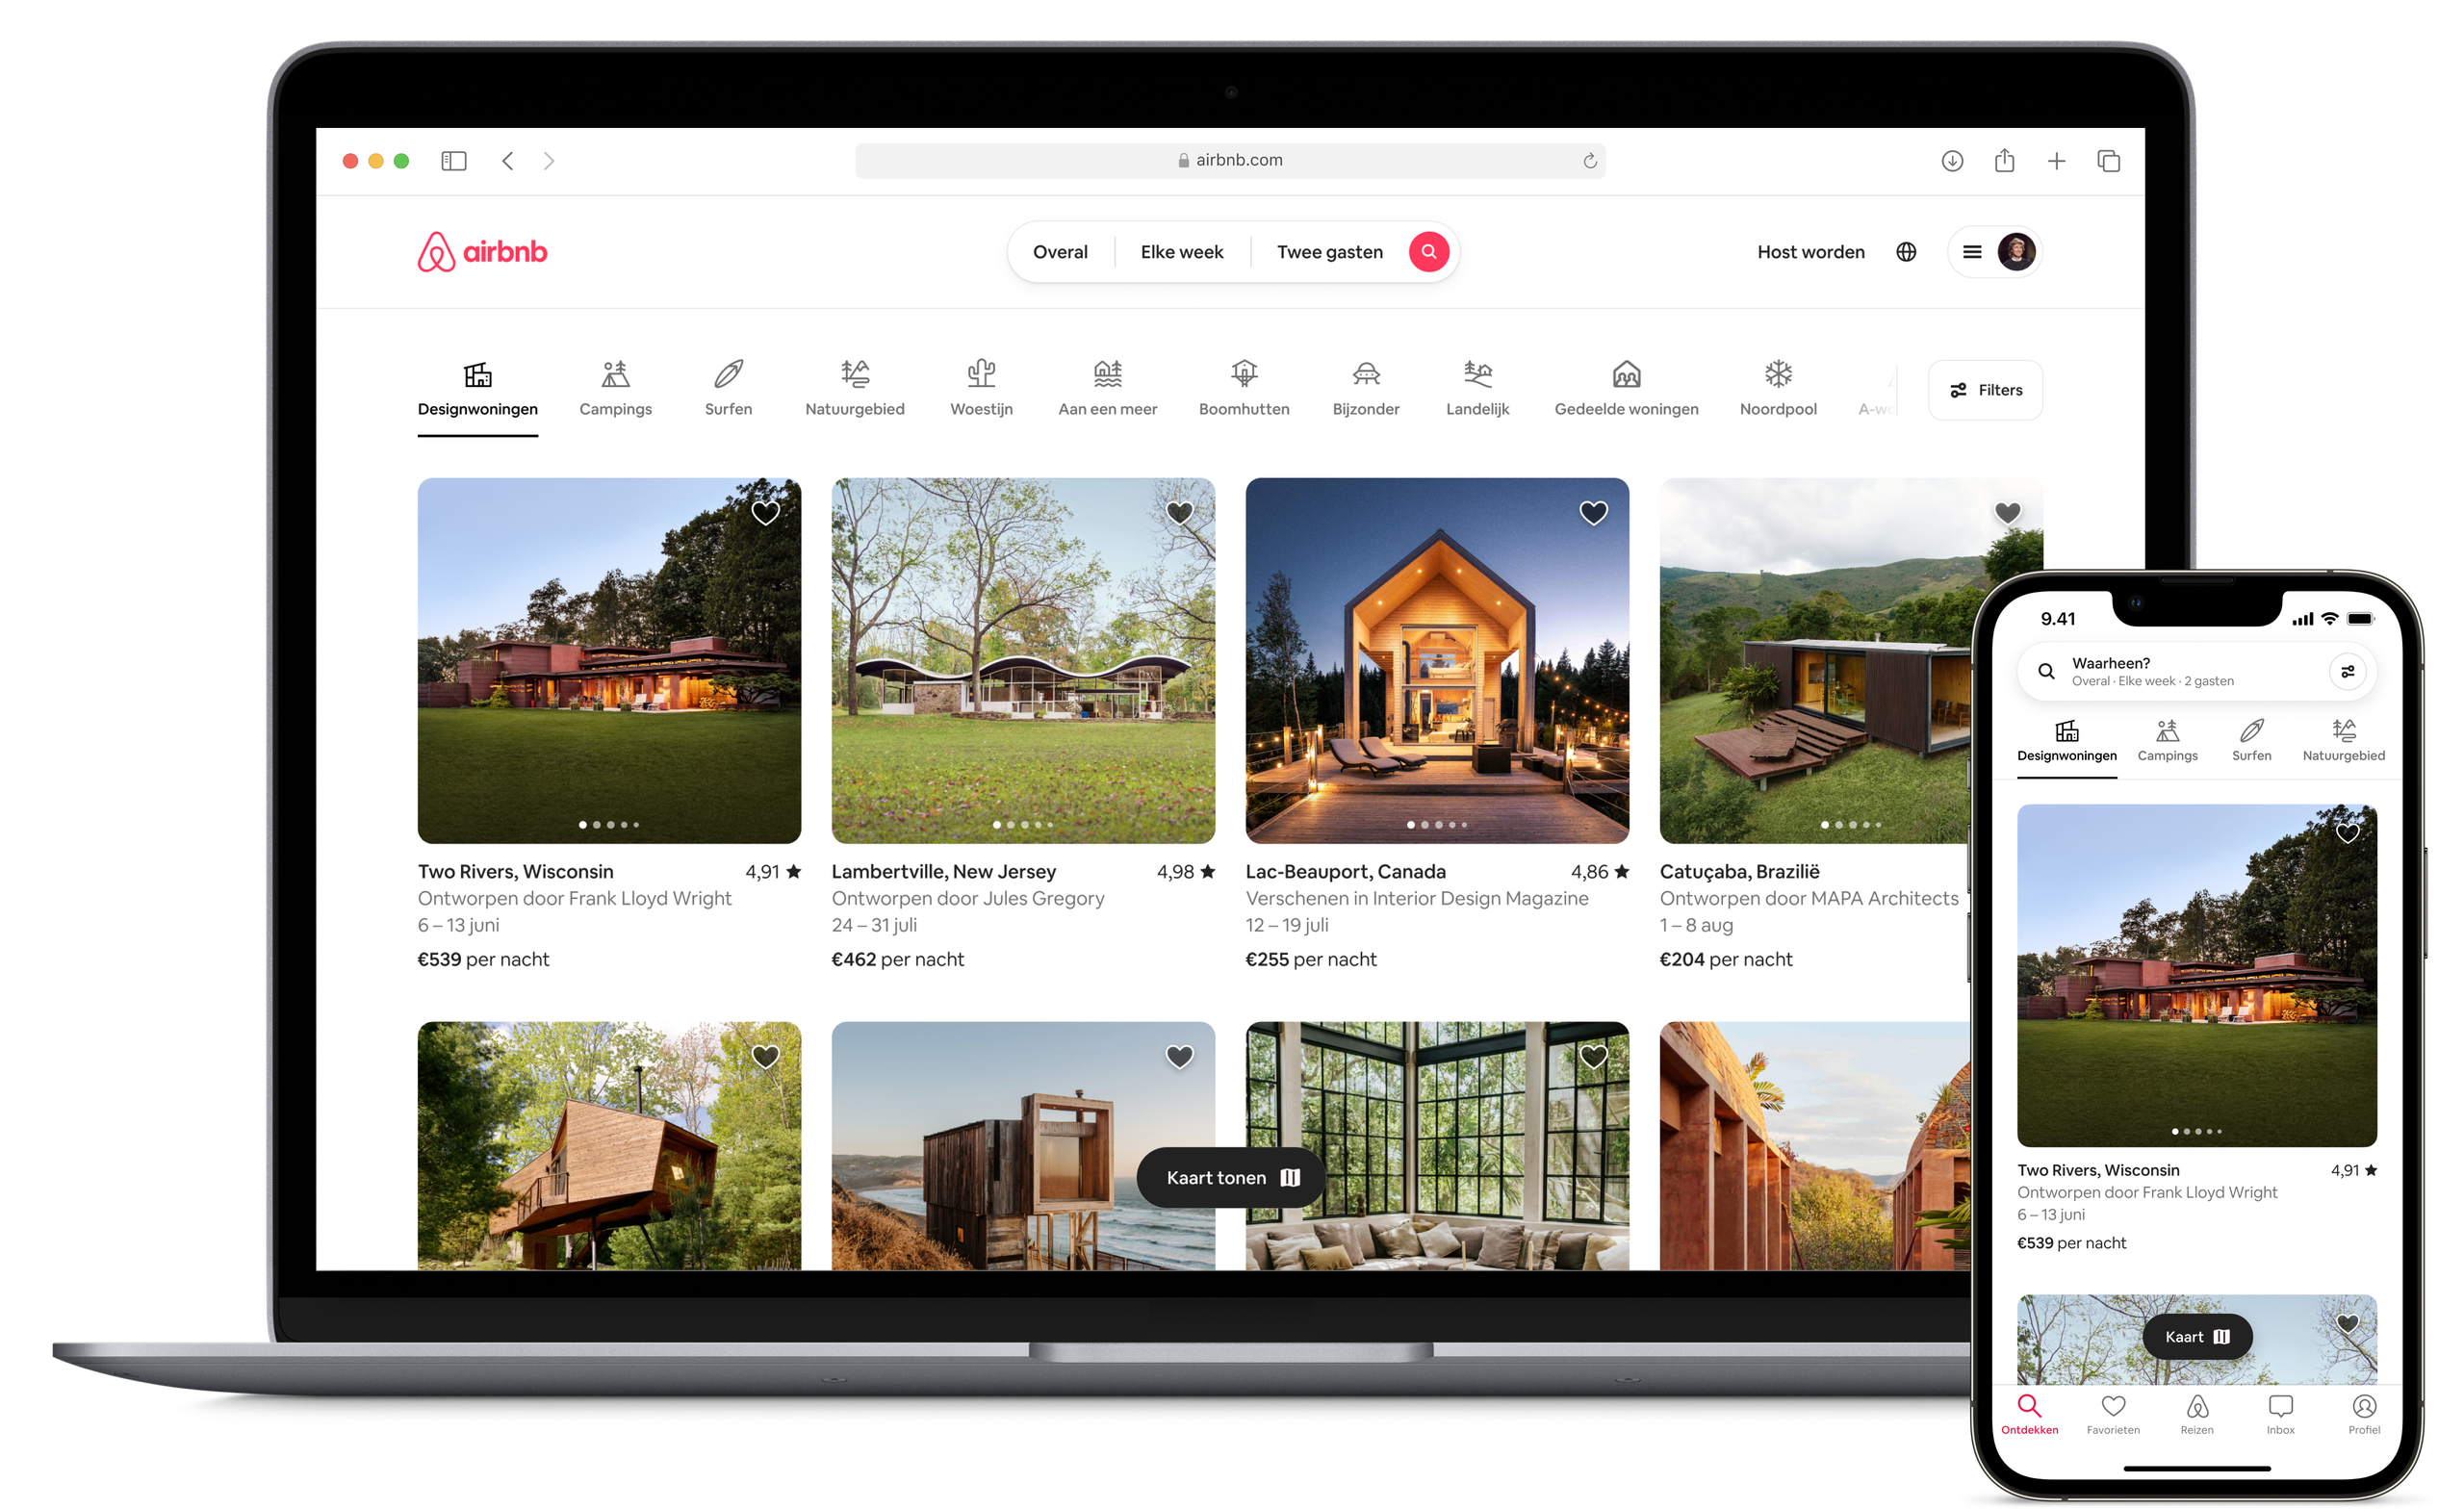 Een open laptop en een mobiele telefoon met de nieuwe startpagina van Airbnb waarop advertentiefoto's uit de Airbnb-categorie designwoningen staan. Een rij pictogrammen bovenaan de pagina met de verschillende categorieën voor gasten.